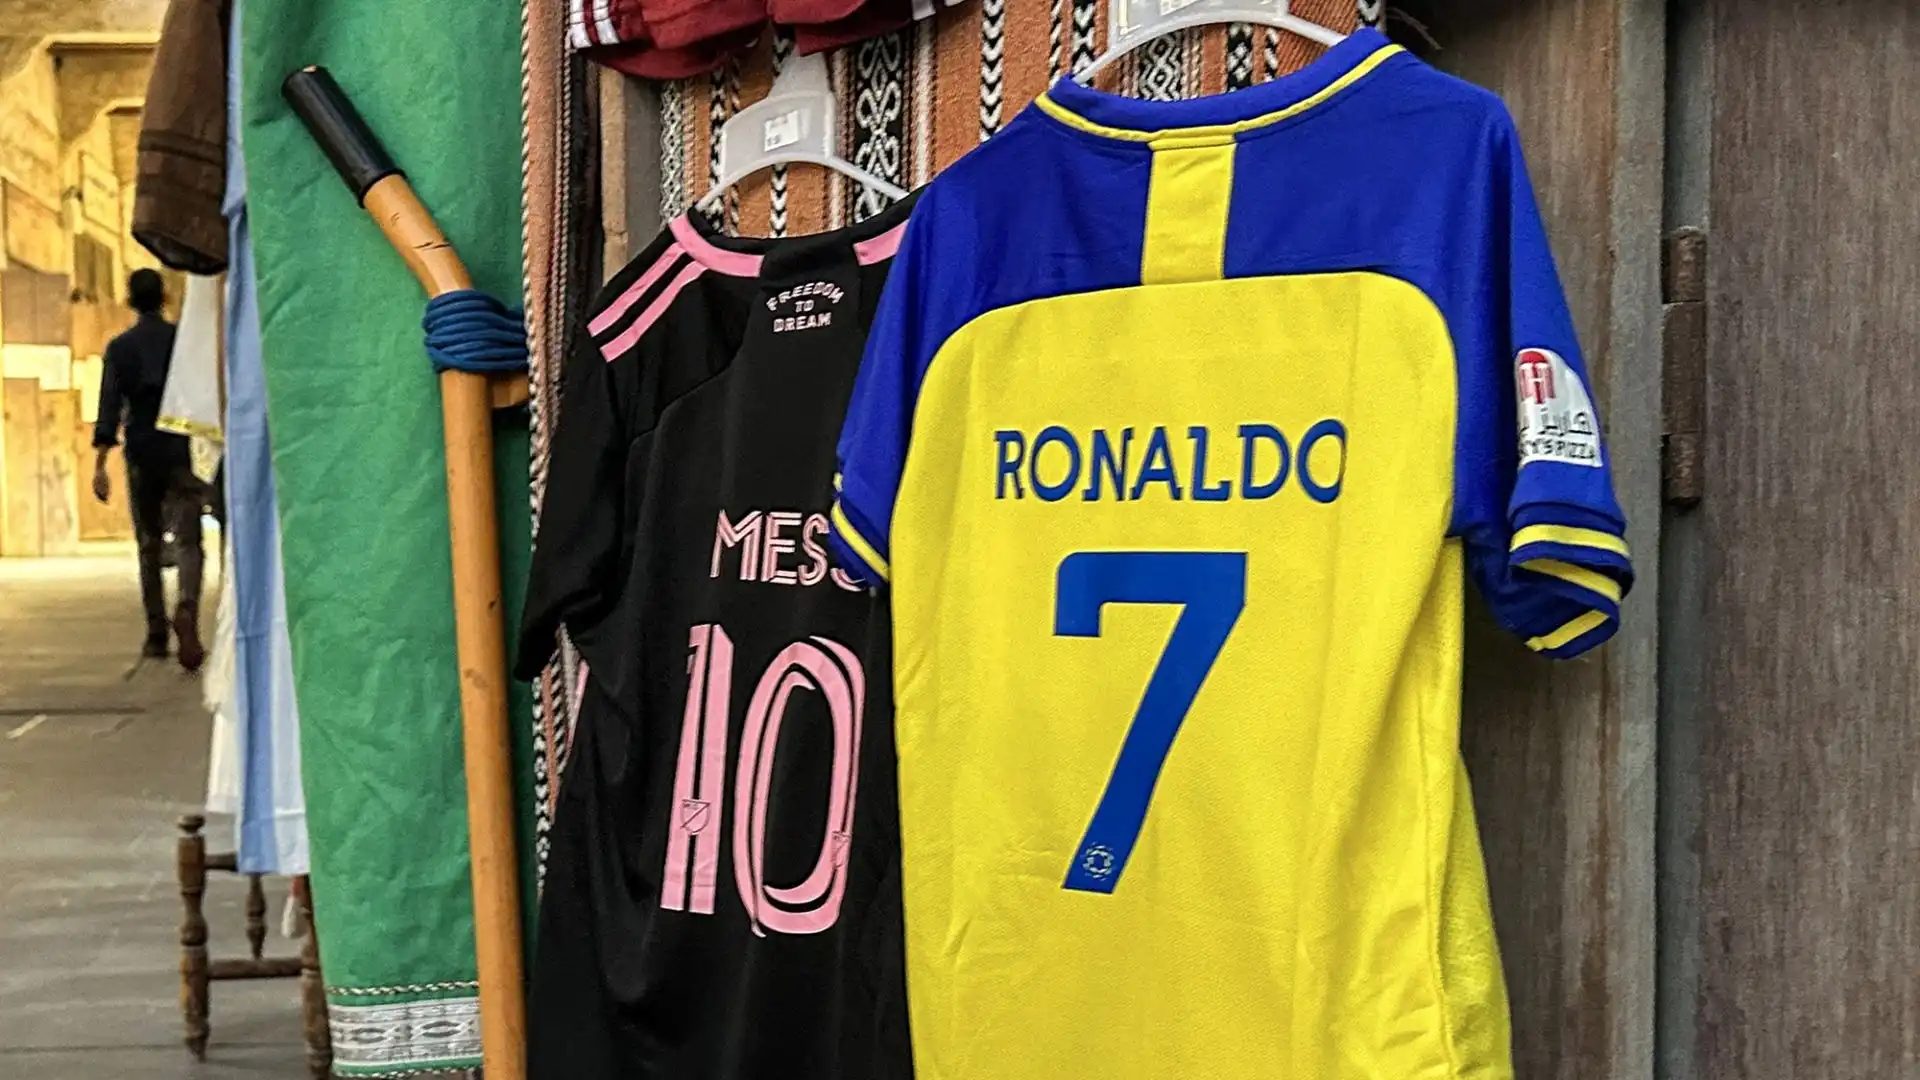 Potrebbe essere svanita l'ultima possibilità di vedere Ronaldo e Messi ancora in campo insieme, almeno a livello agonistico